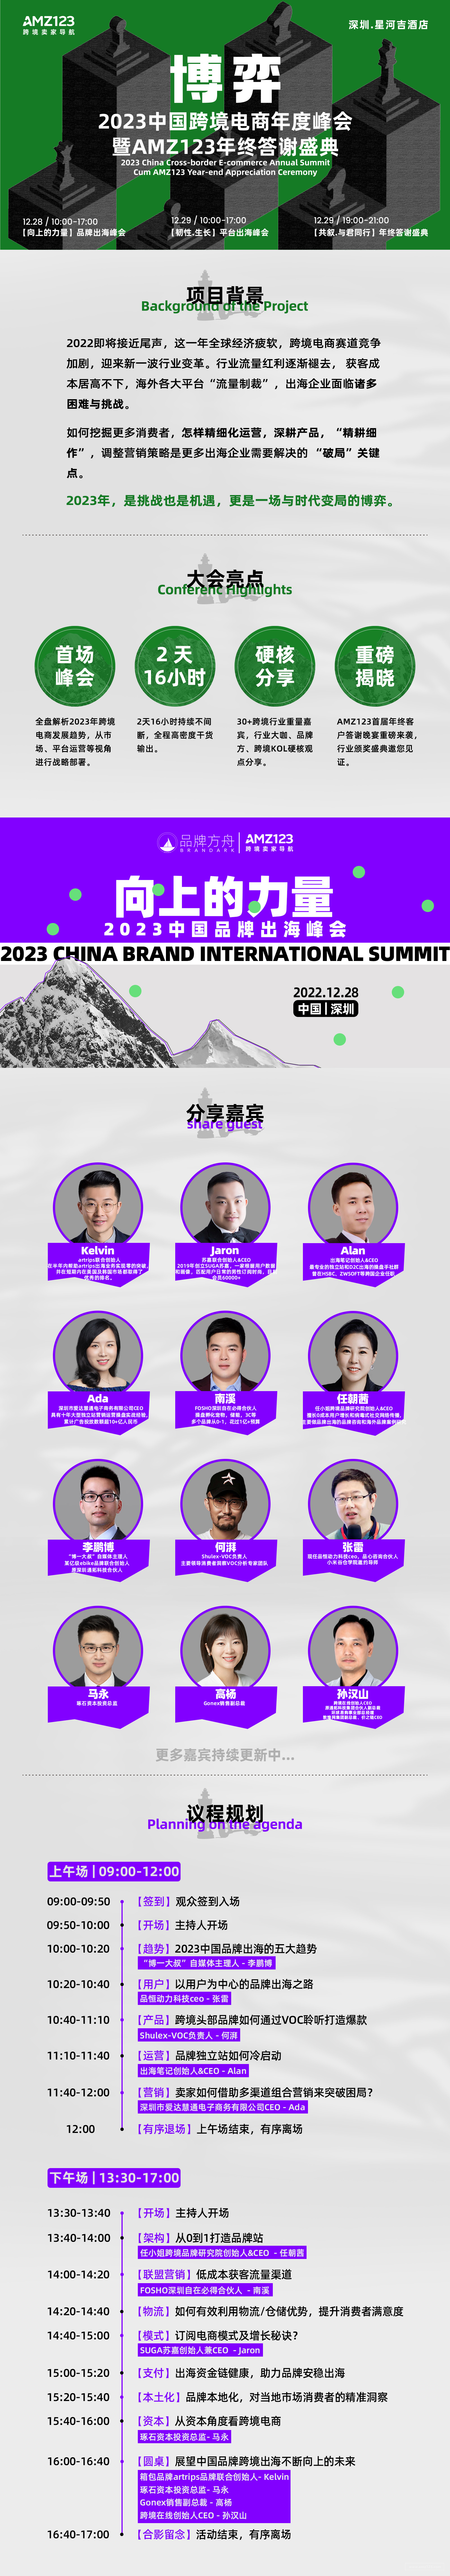 【博弈】-2023中国跨境电商年度峰会暨AMZ123年终答谢盛典